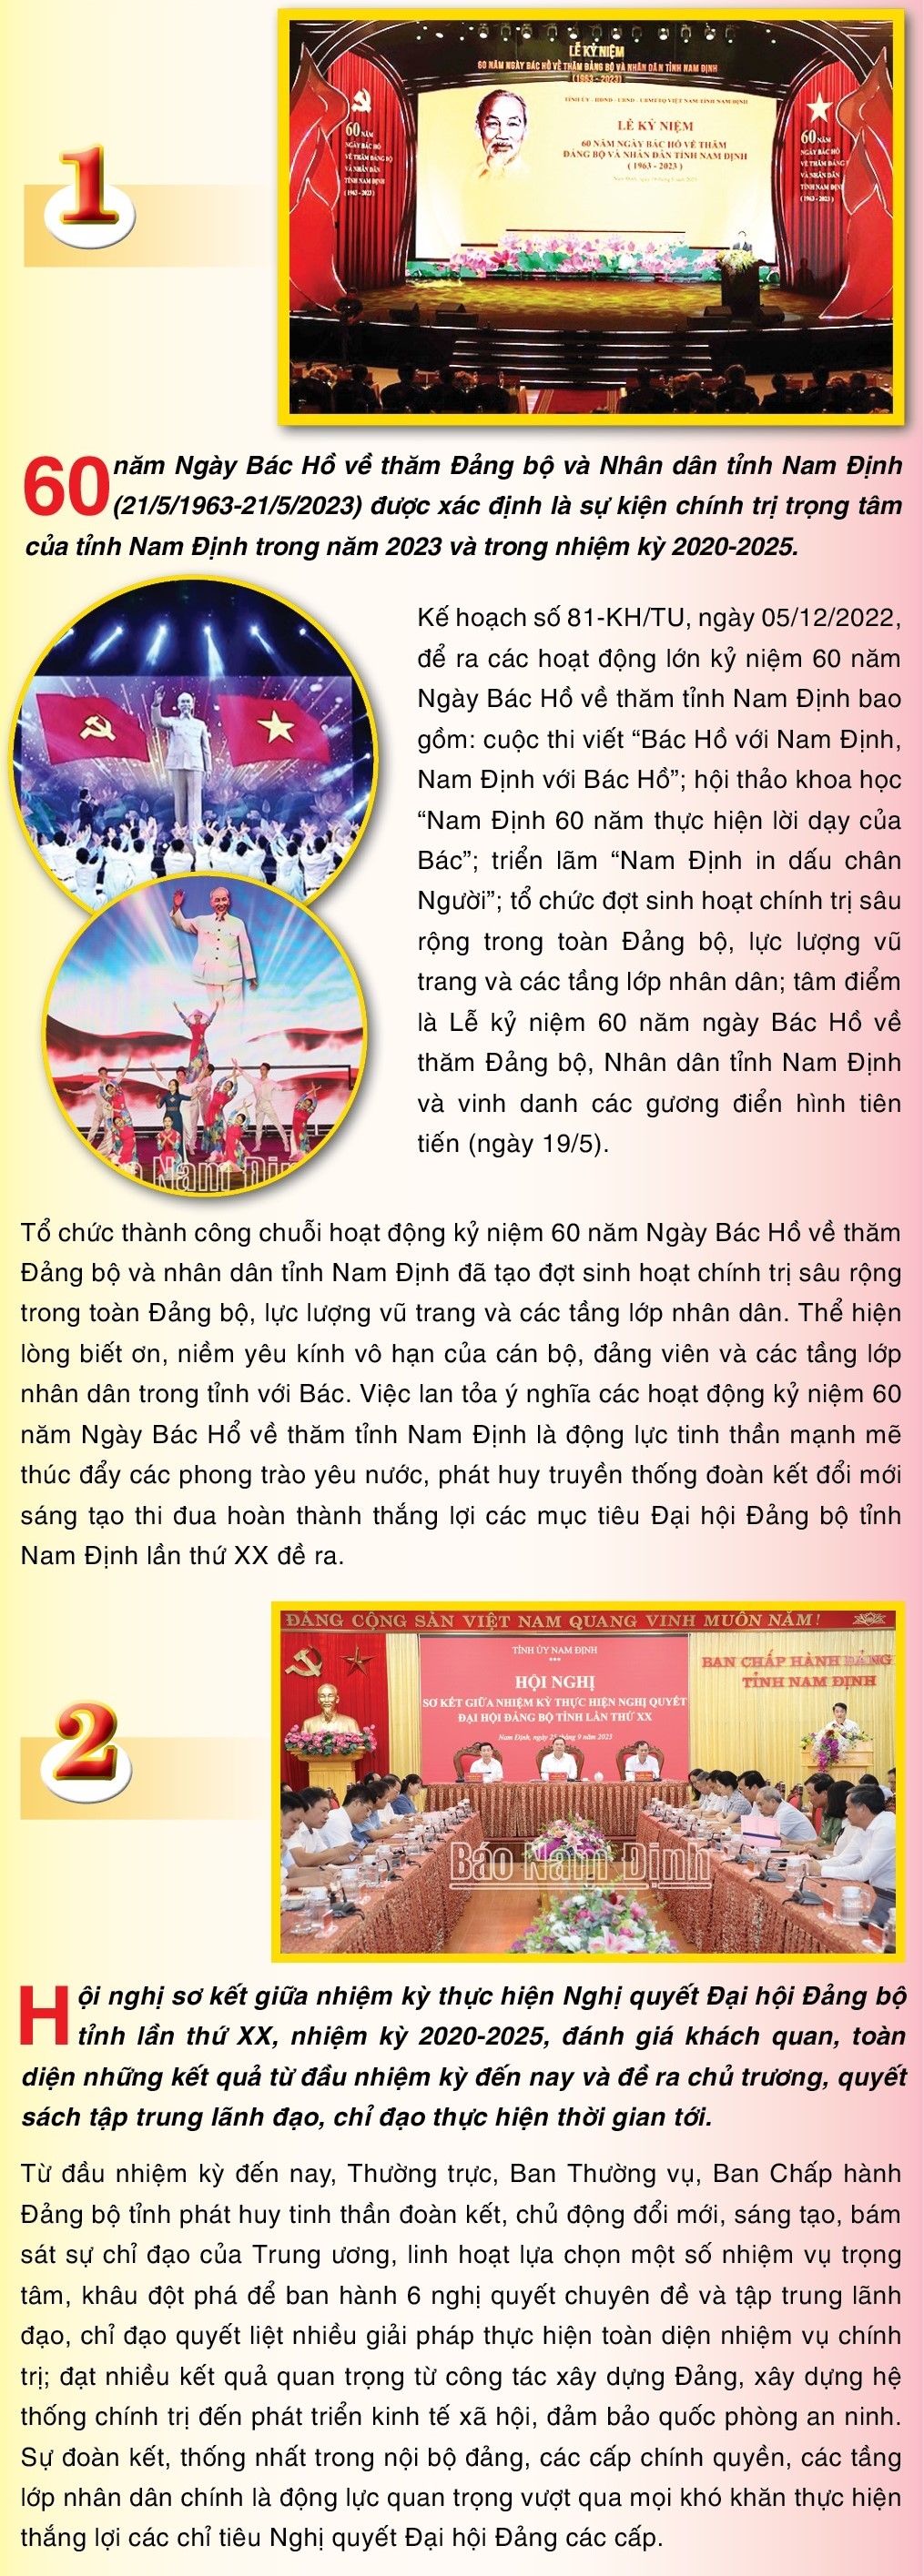 10 sự kiện tiêu biểu tỉnh Nam Định năm 2023 qua báo chí